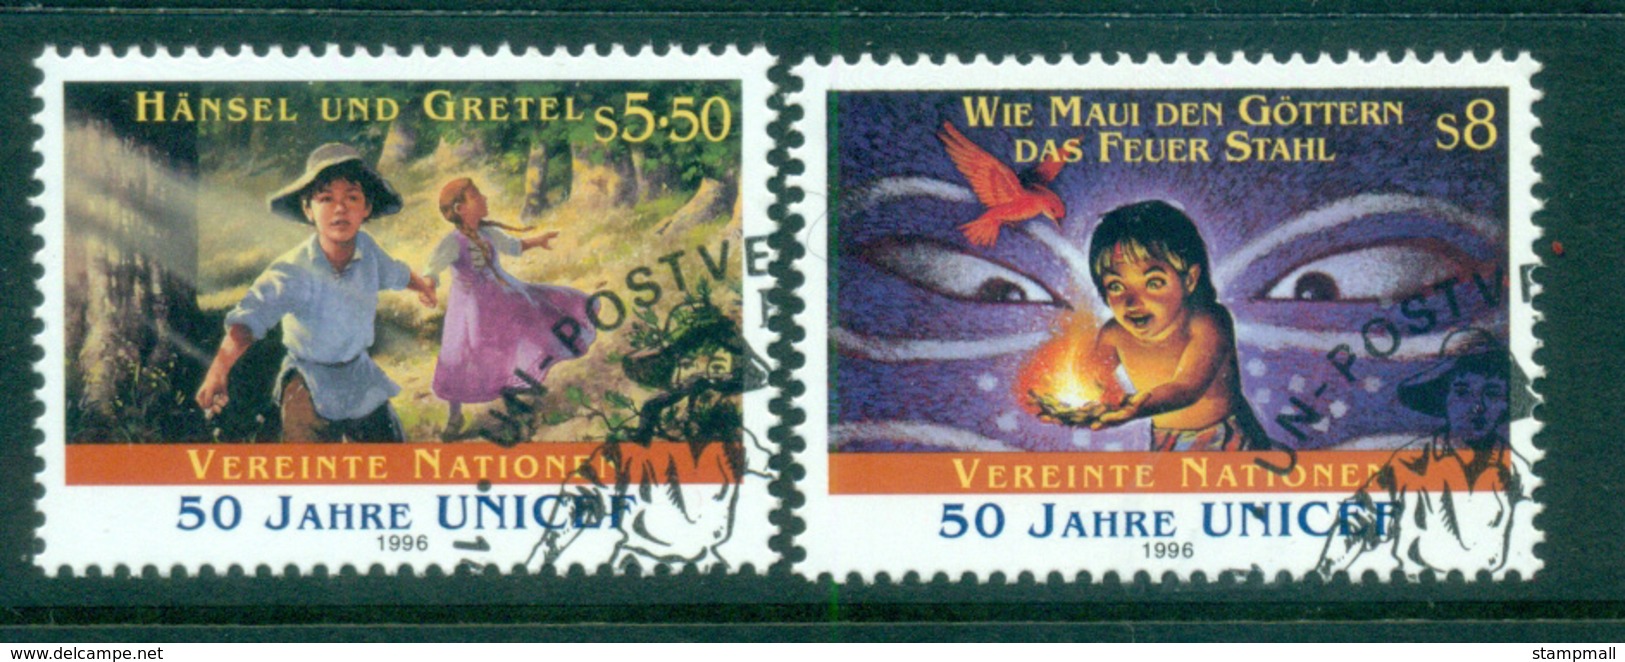 UN Vienna 1998 UN Anniv. CTO Lot65972 - Unused Stamps